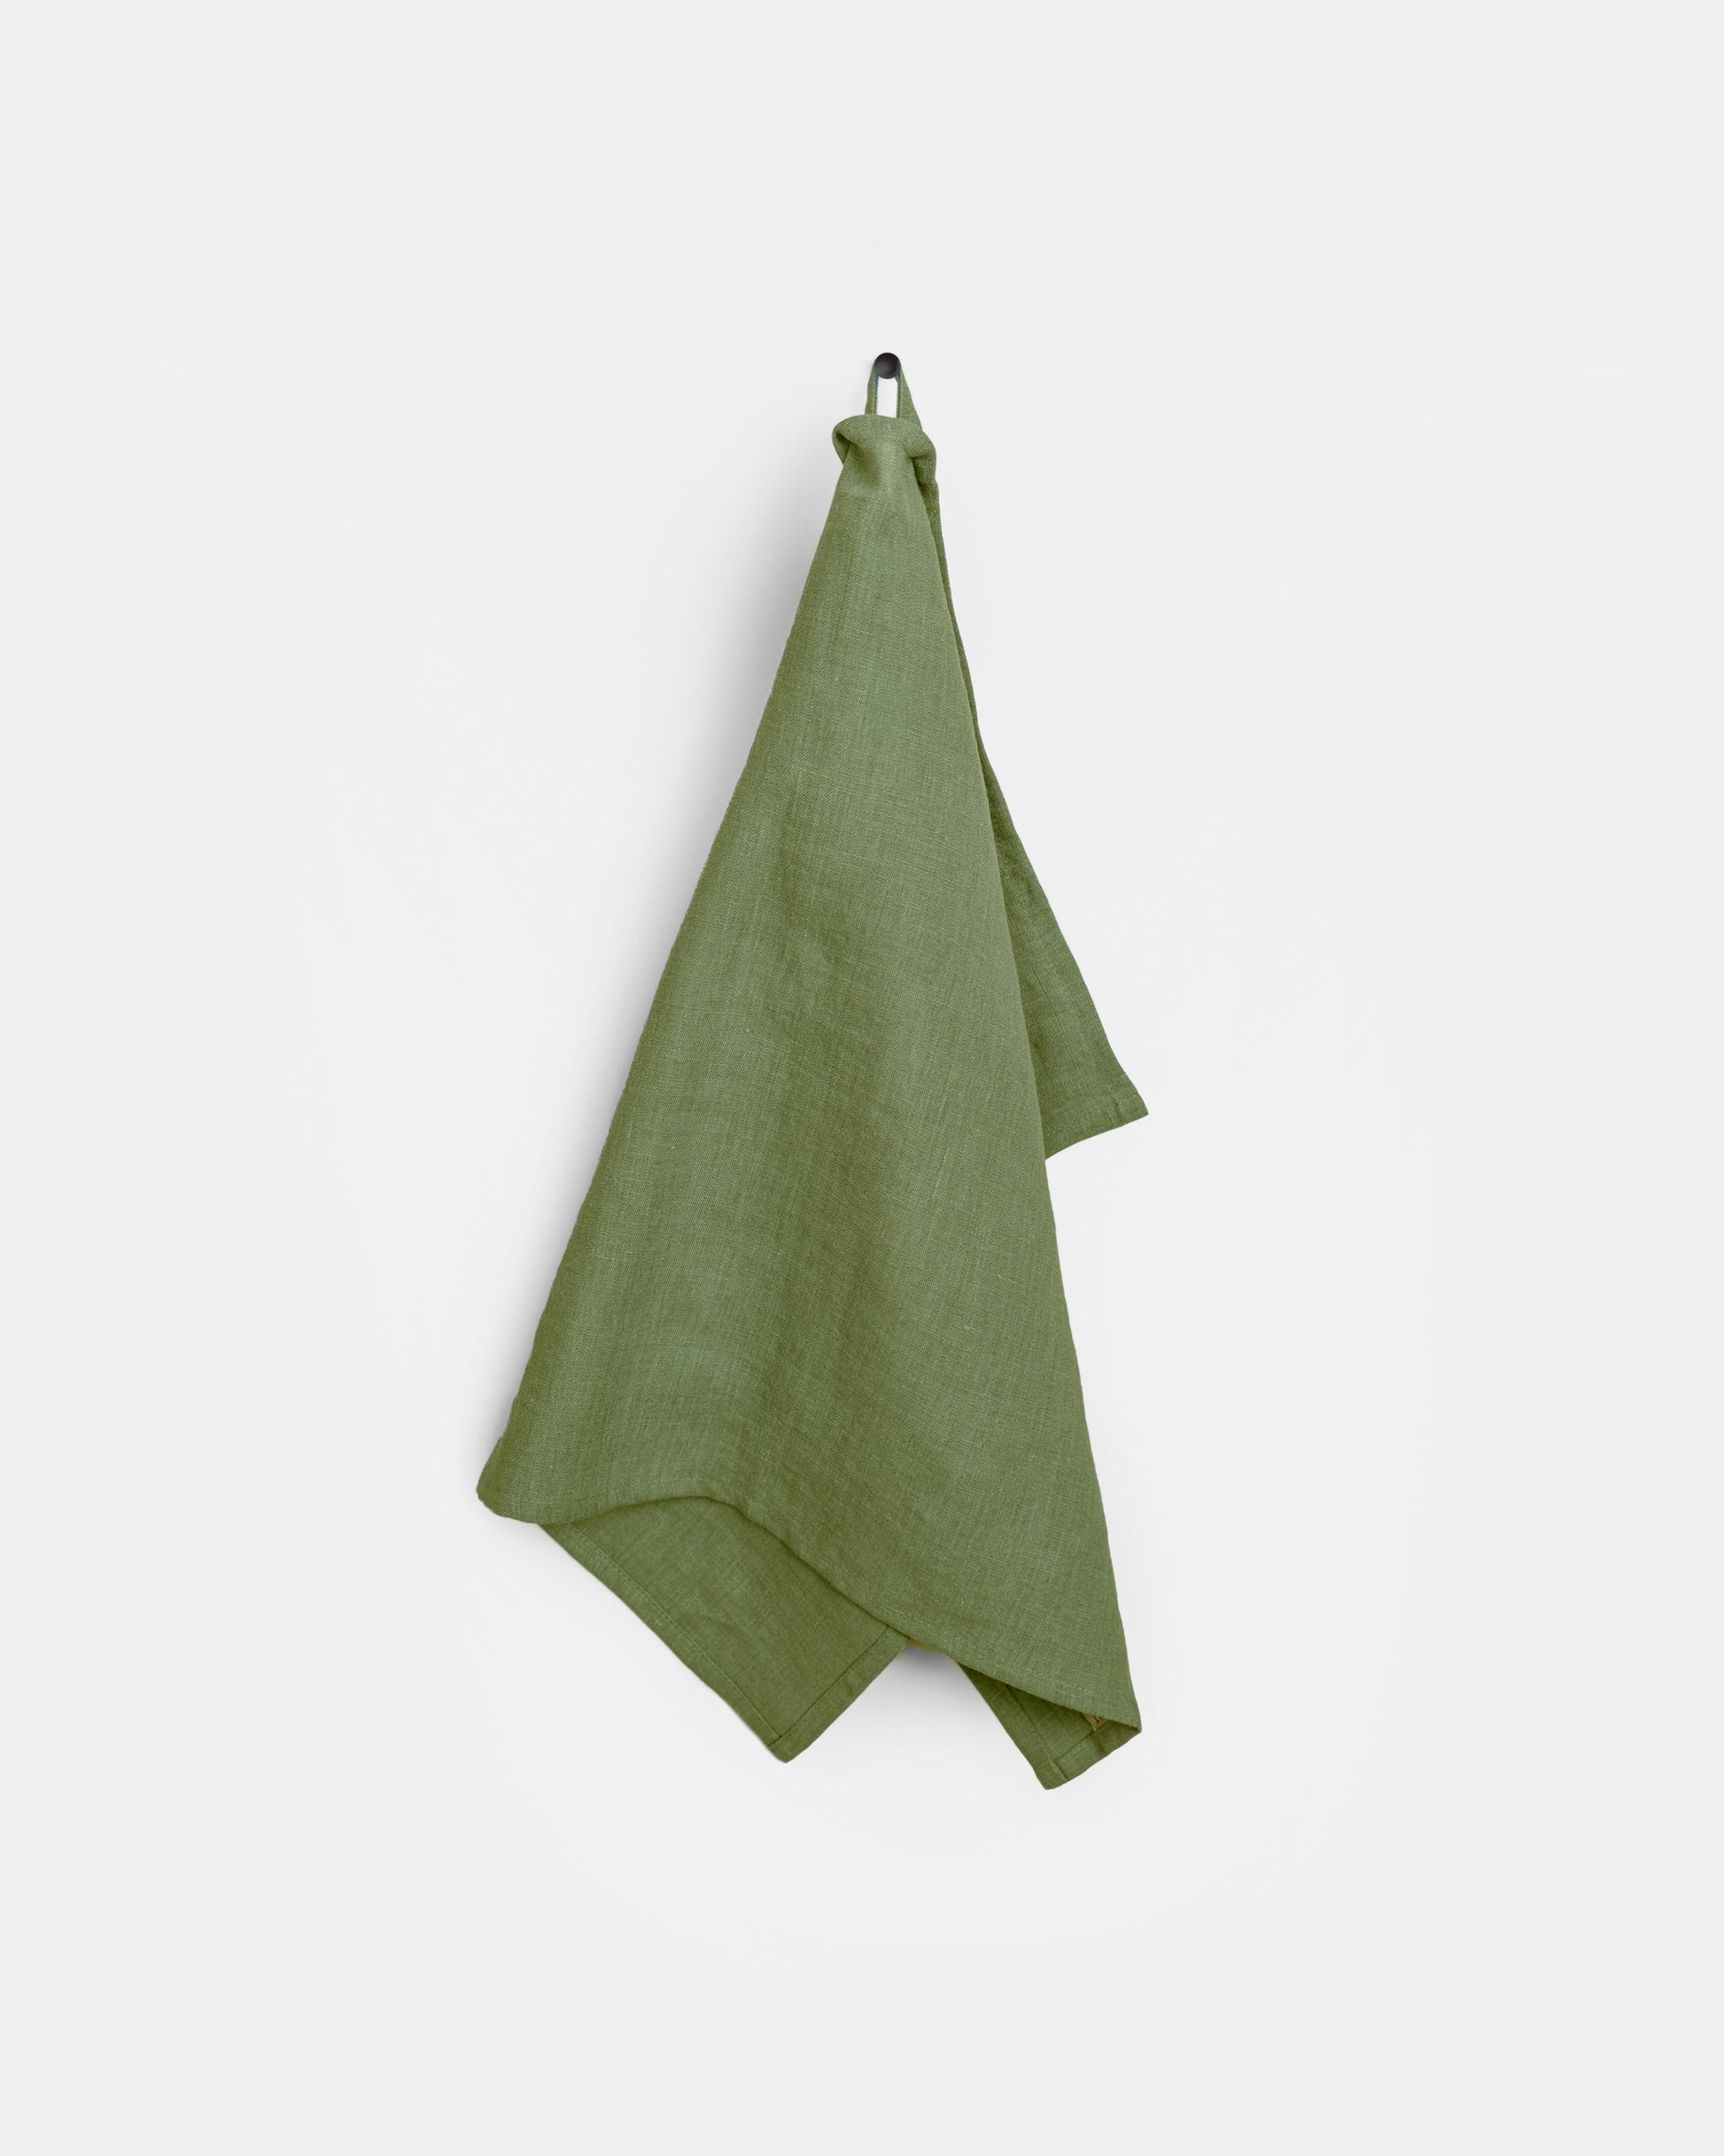 Linen tea towel in Forest green - MagicLinen